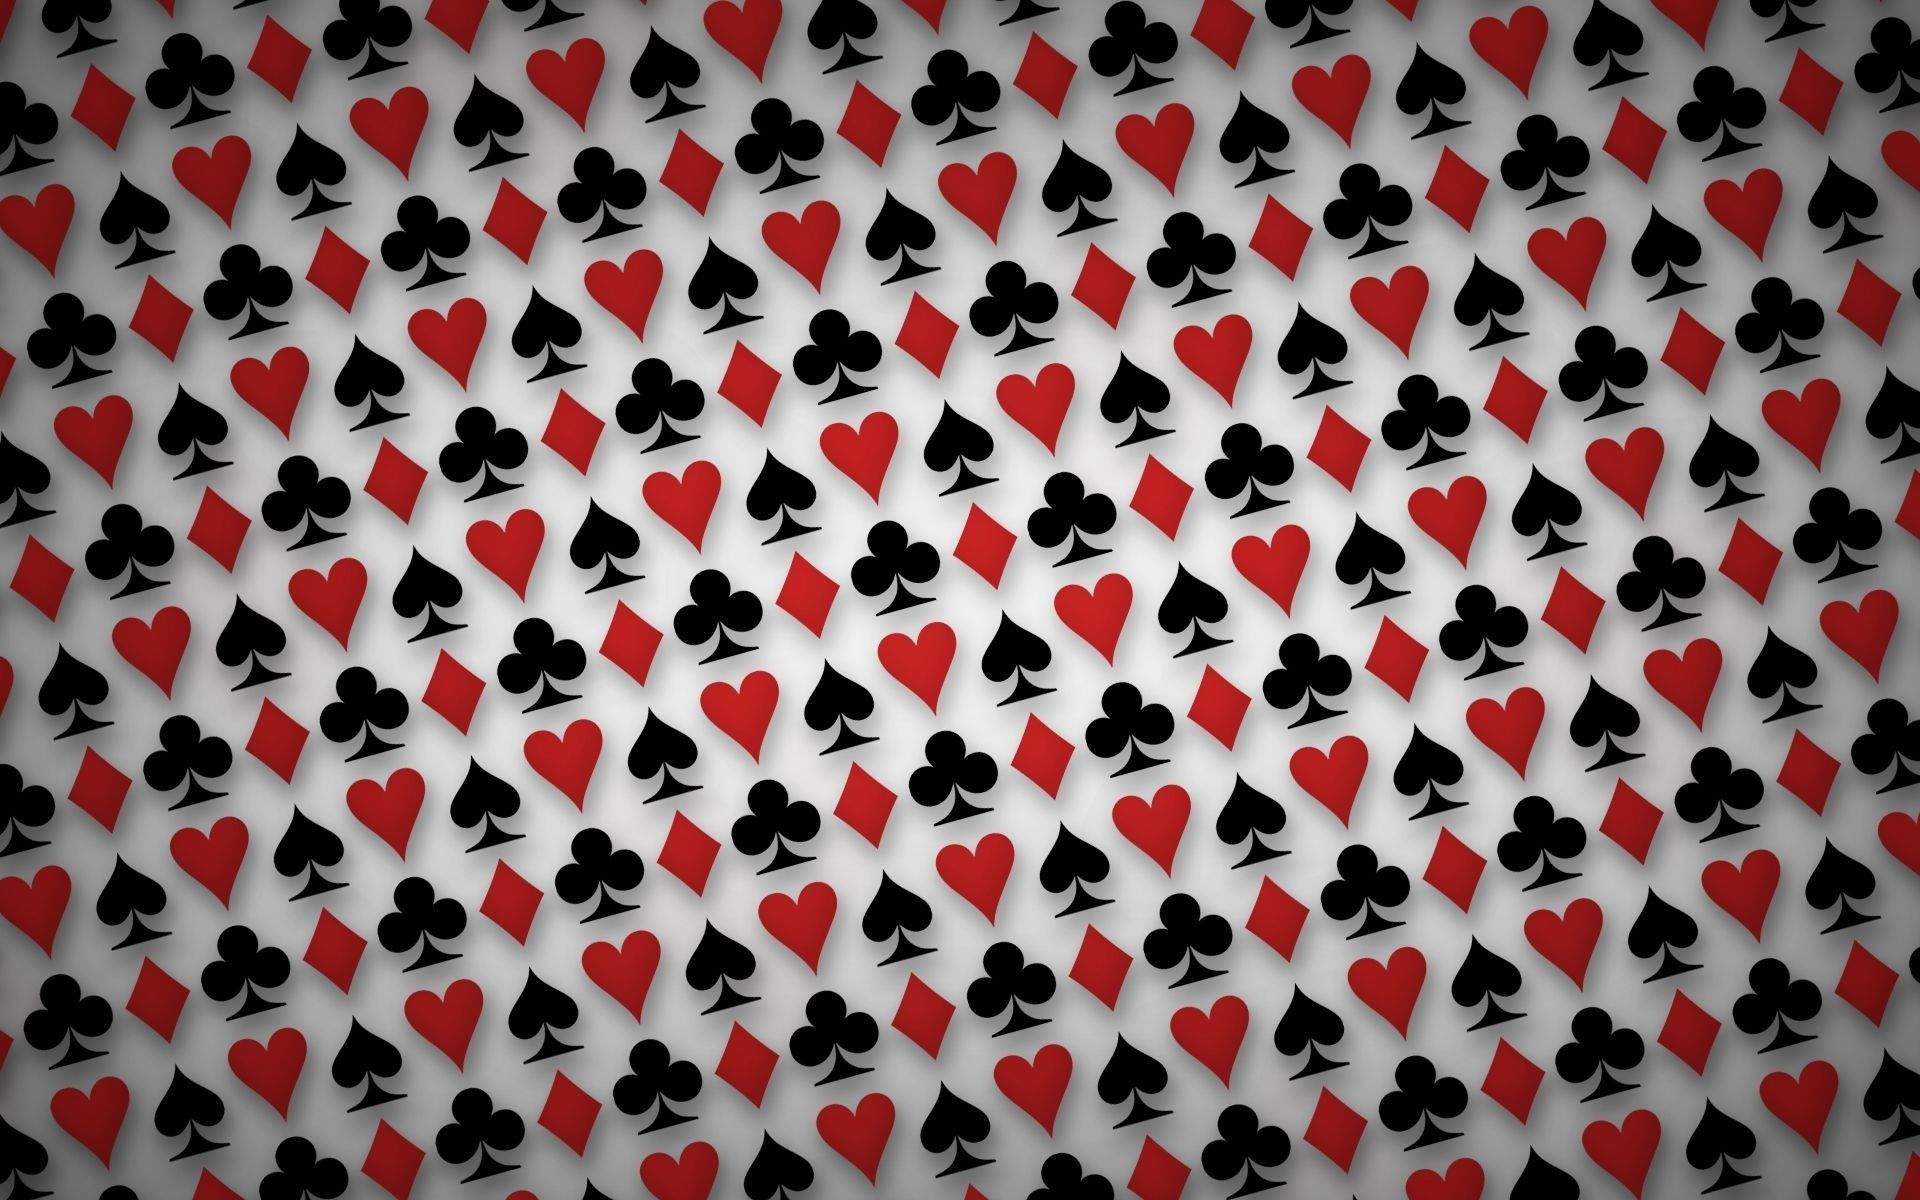 Title Game Card Heart Diamond Spade Wallpaper Cards Twitter Header HD Wallpaper